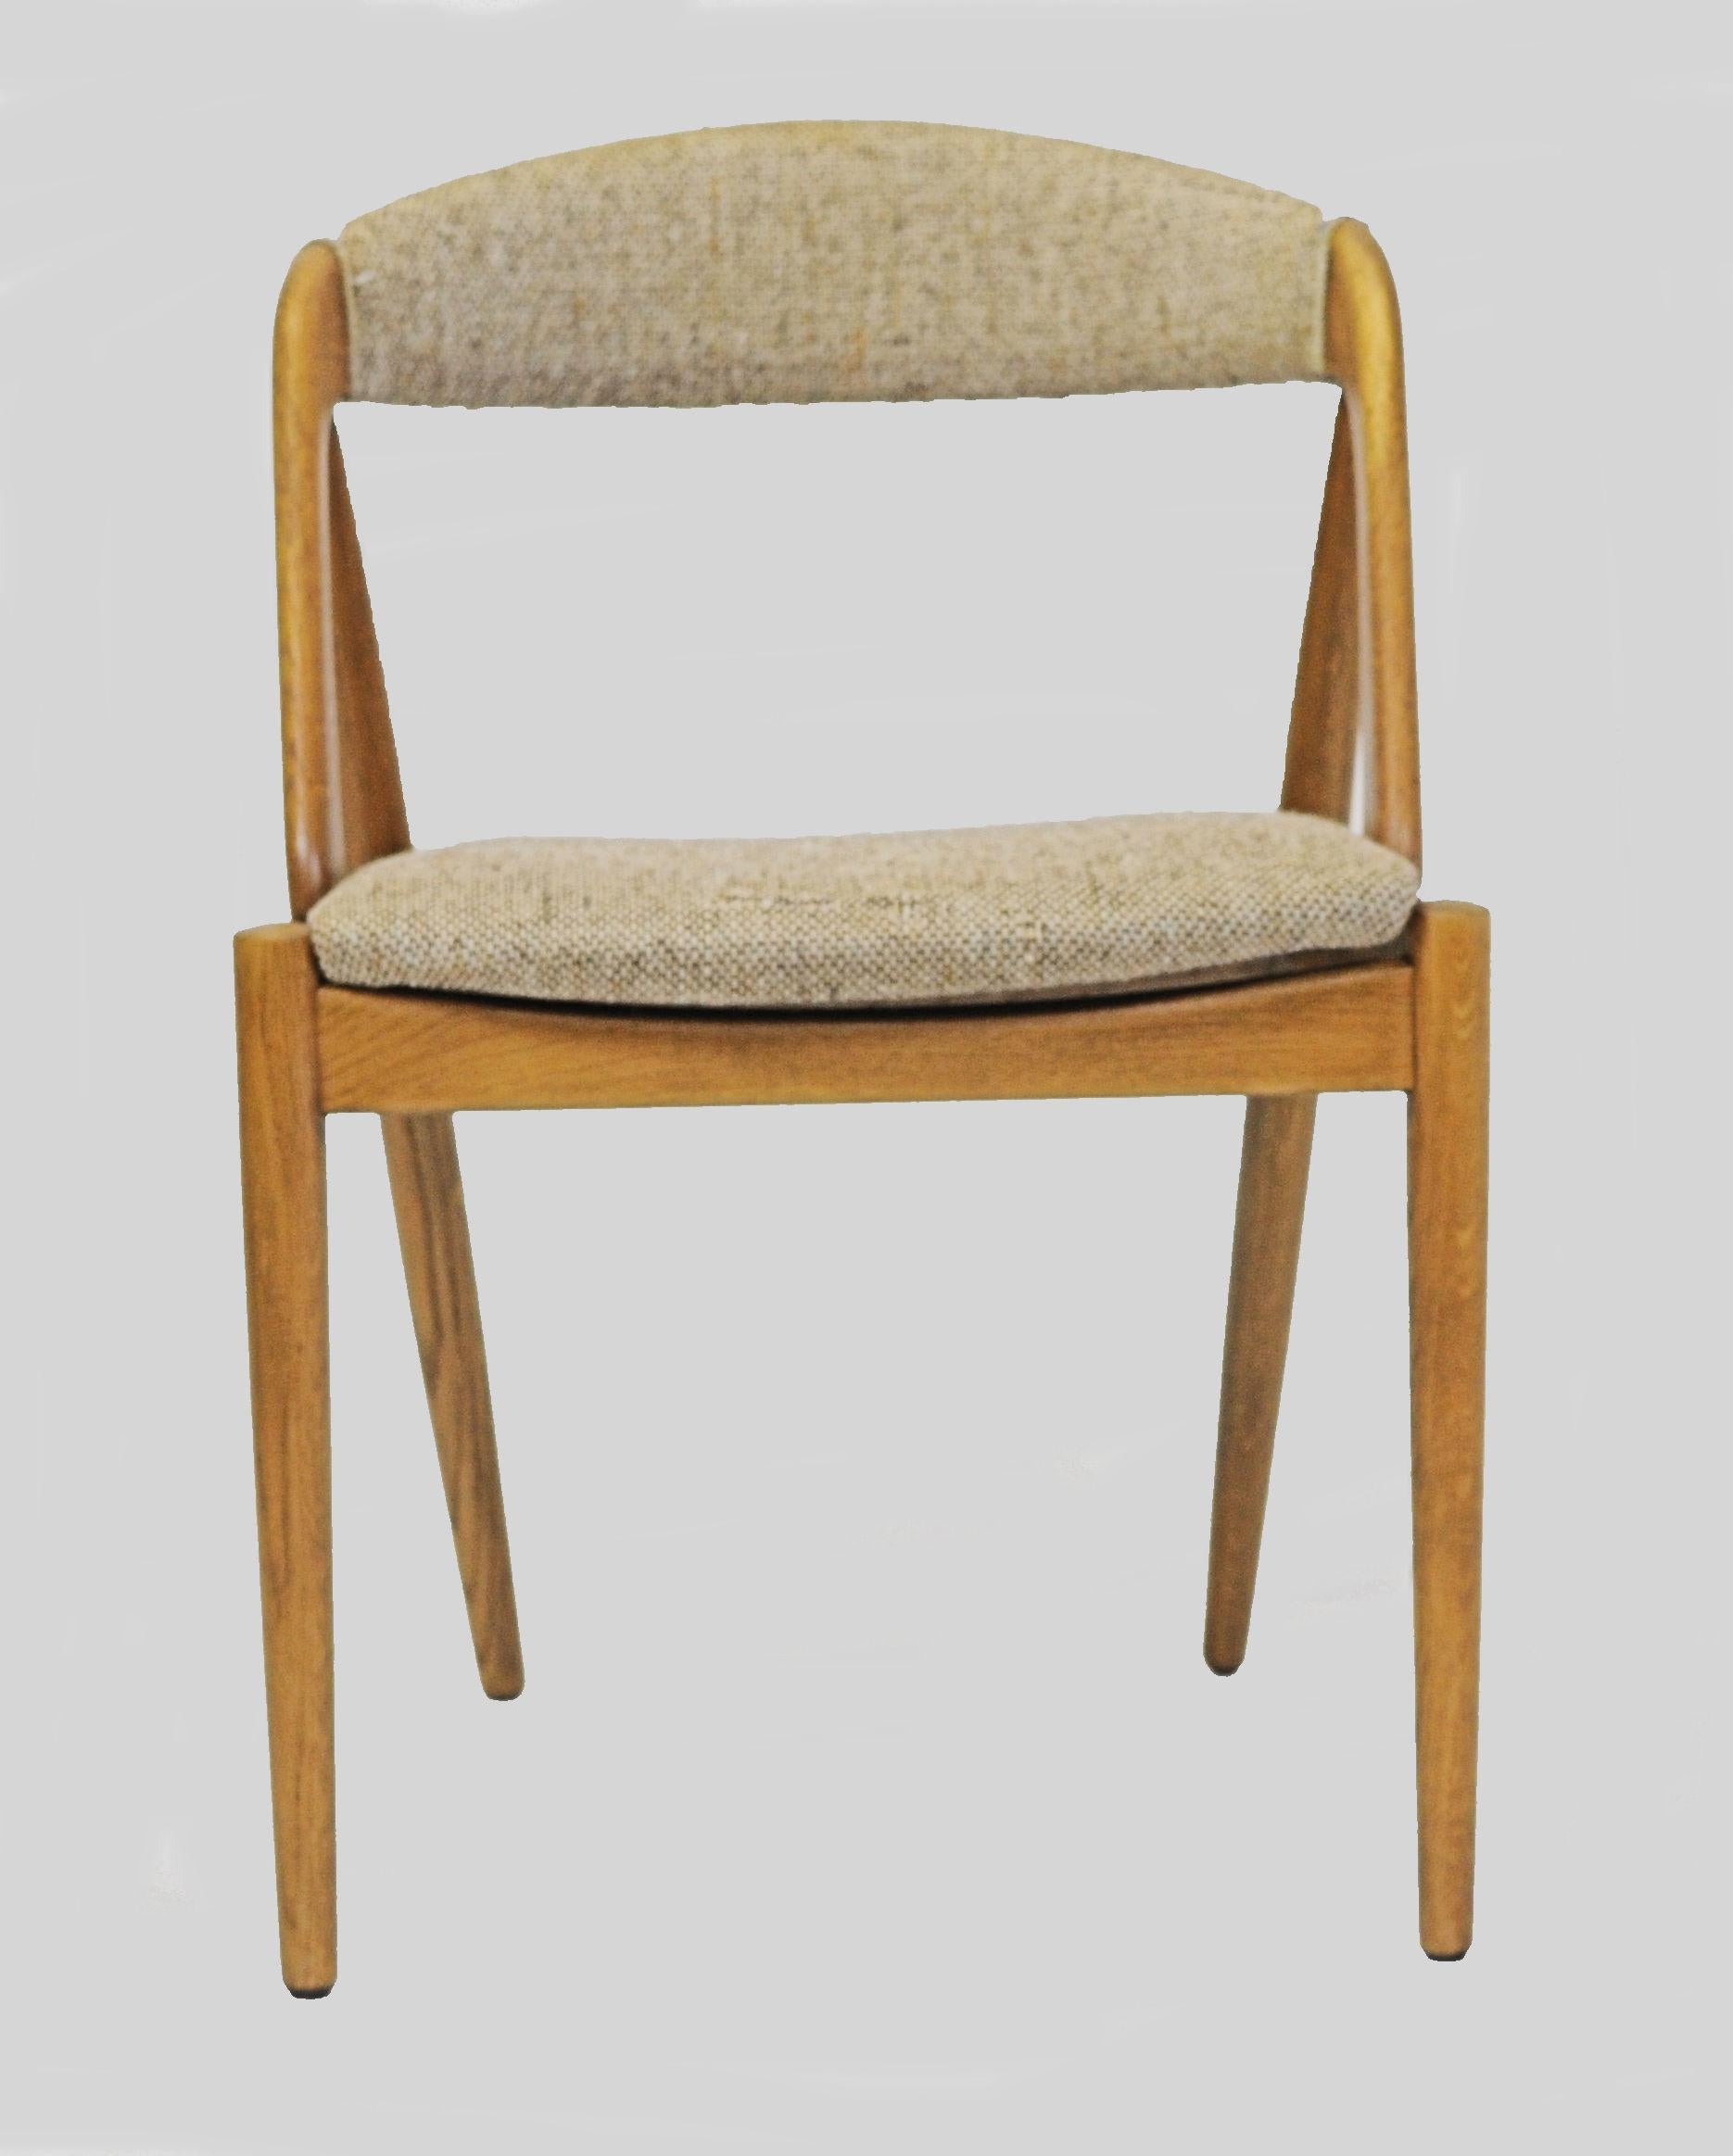 Satz von zehn Esszimmerstühlen Modell 31 aus Eiche, entworfen von Kai Kristiansen für die Schou Andersens Møbelfabrik im Jahr 1956.

Die Stühle wurden von unserem Tischler vollständig restauriert und aufgearbeitet, um sicherzustellen, dass sie sich